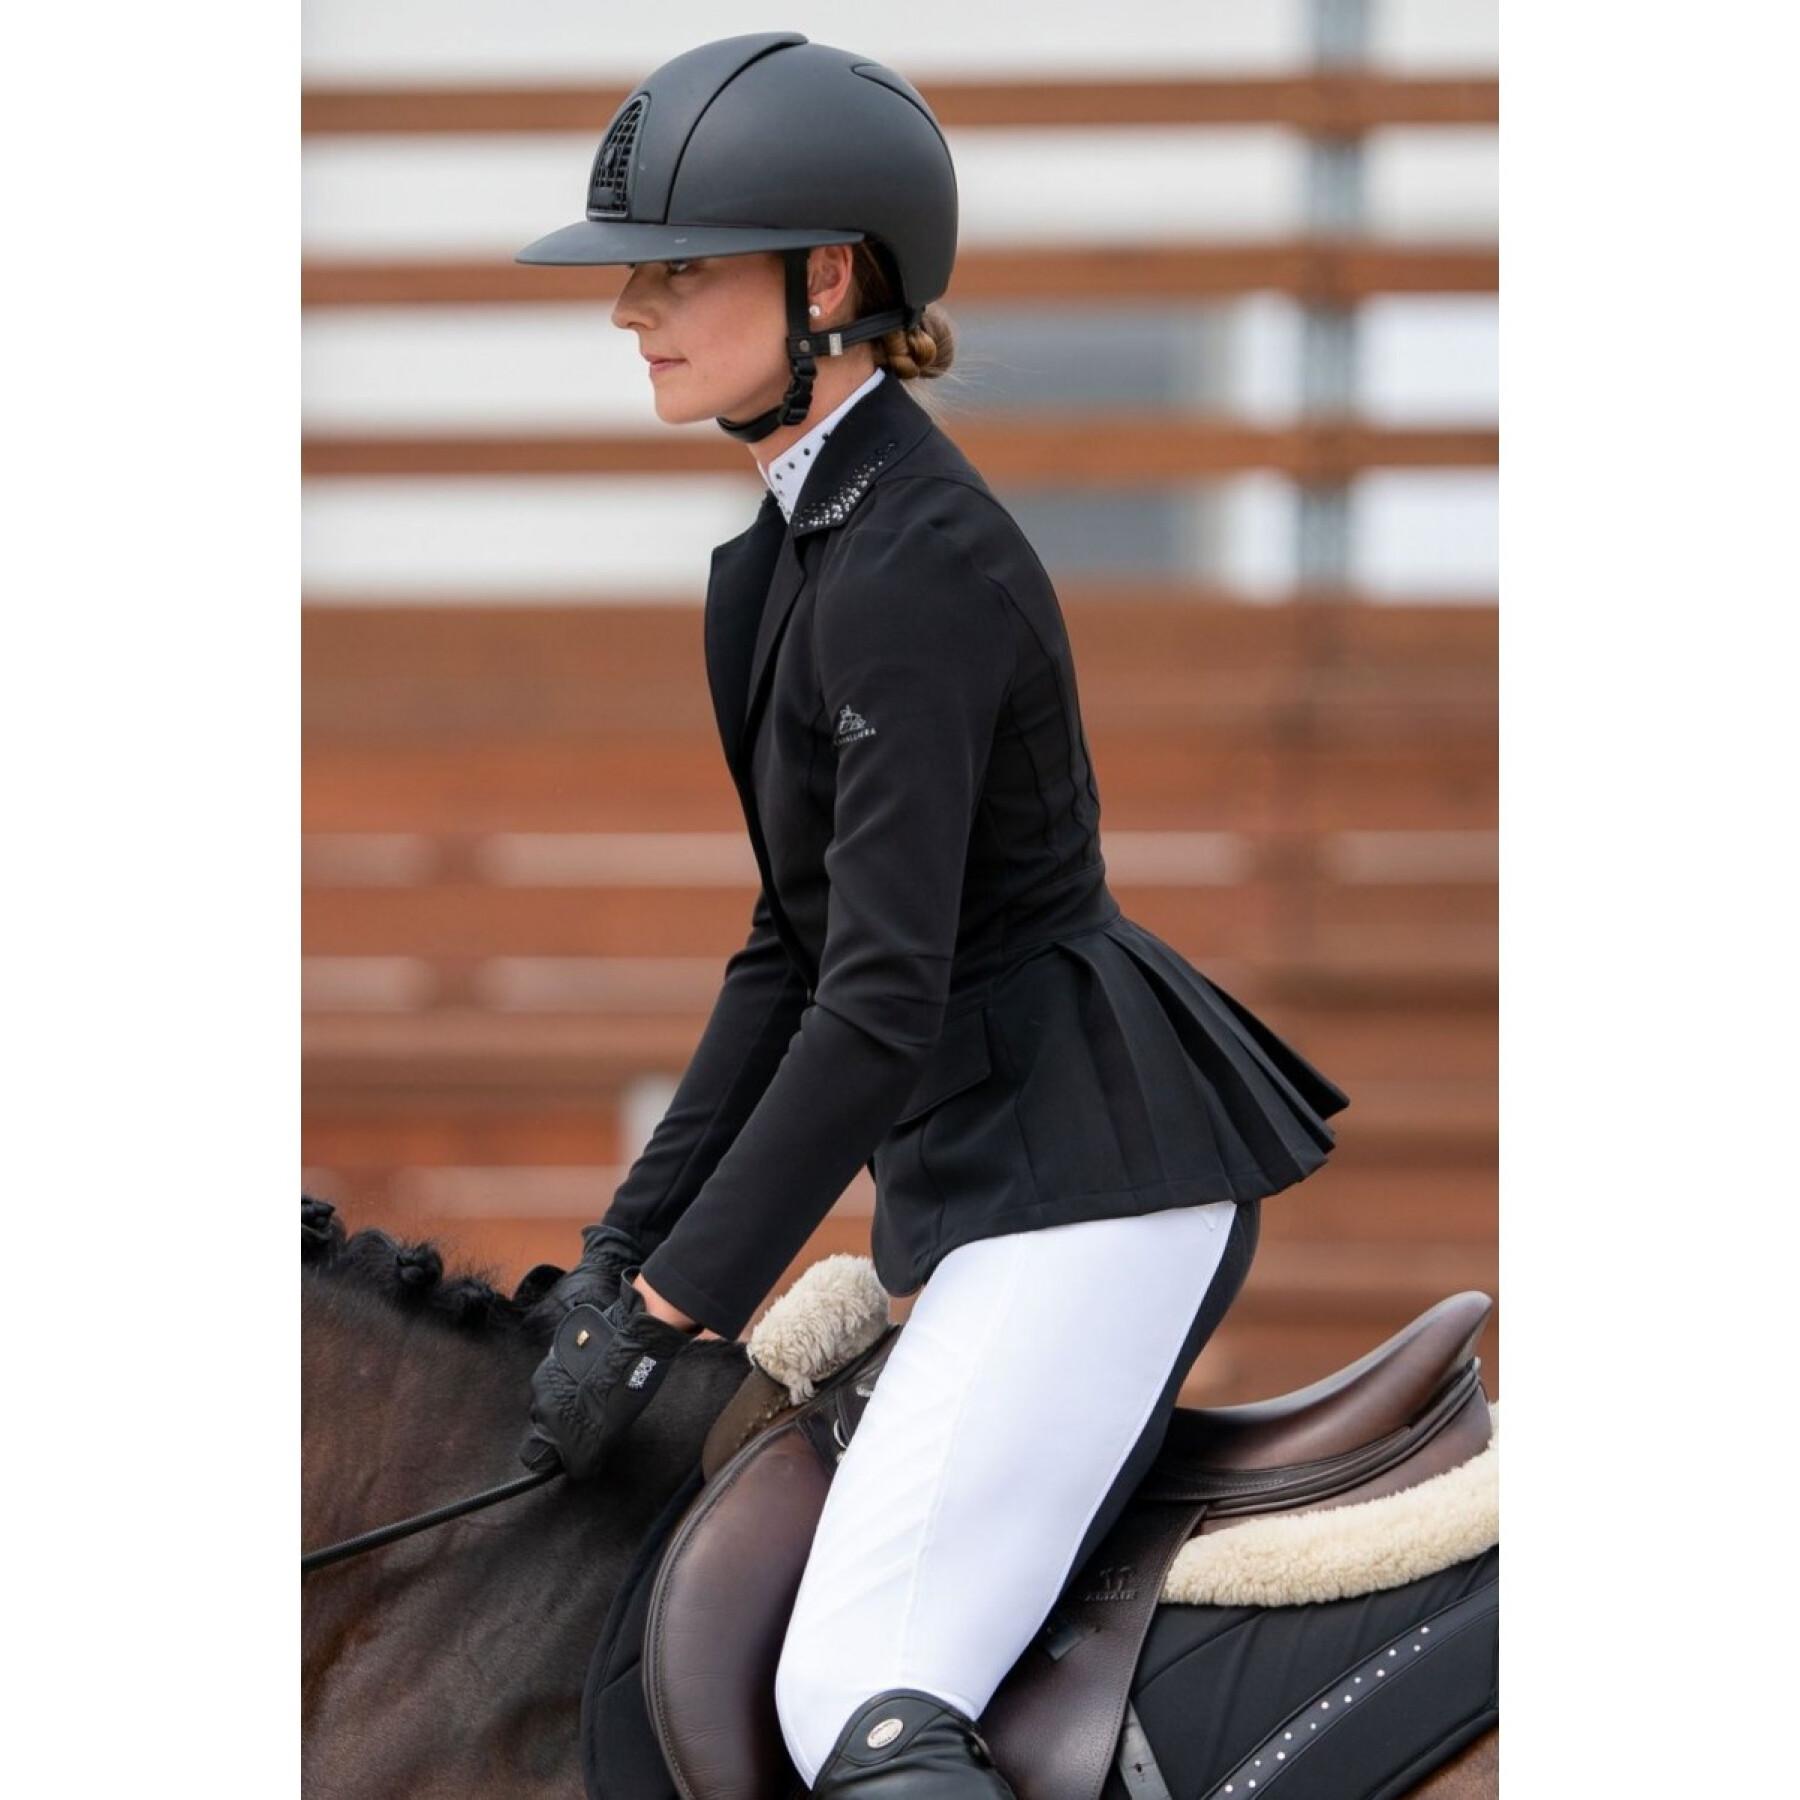 Veste équitation de concours équestre femme Cavalliera Diva purity